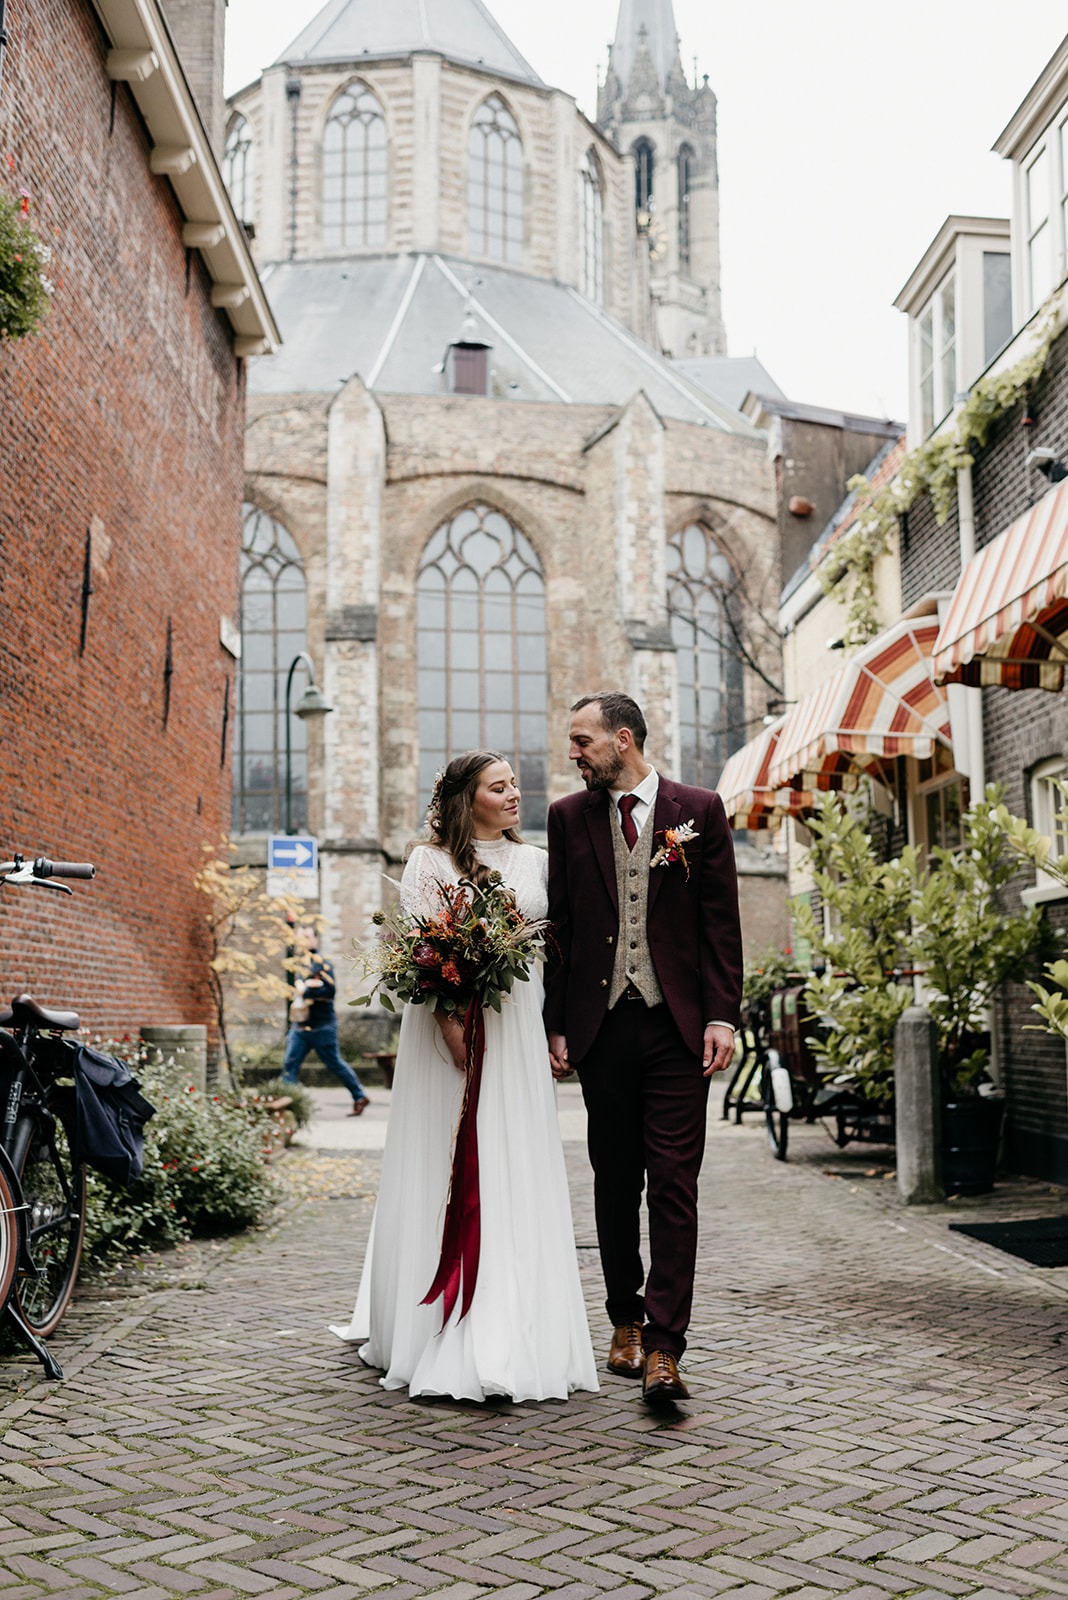 Bruidspaar lopend door de straten van Delft.